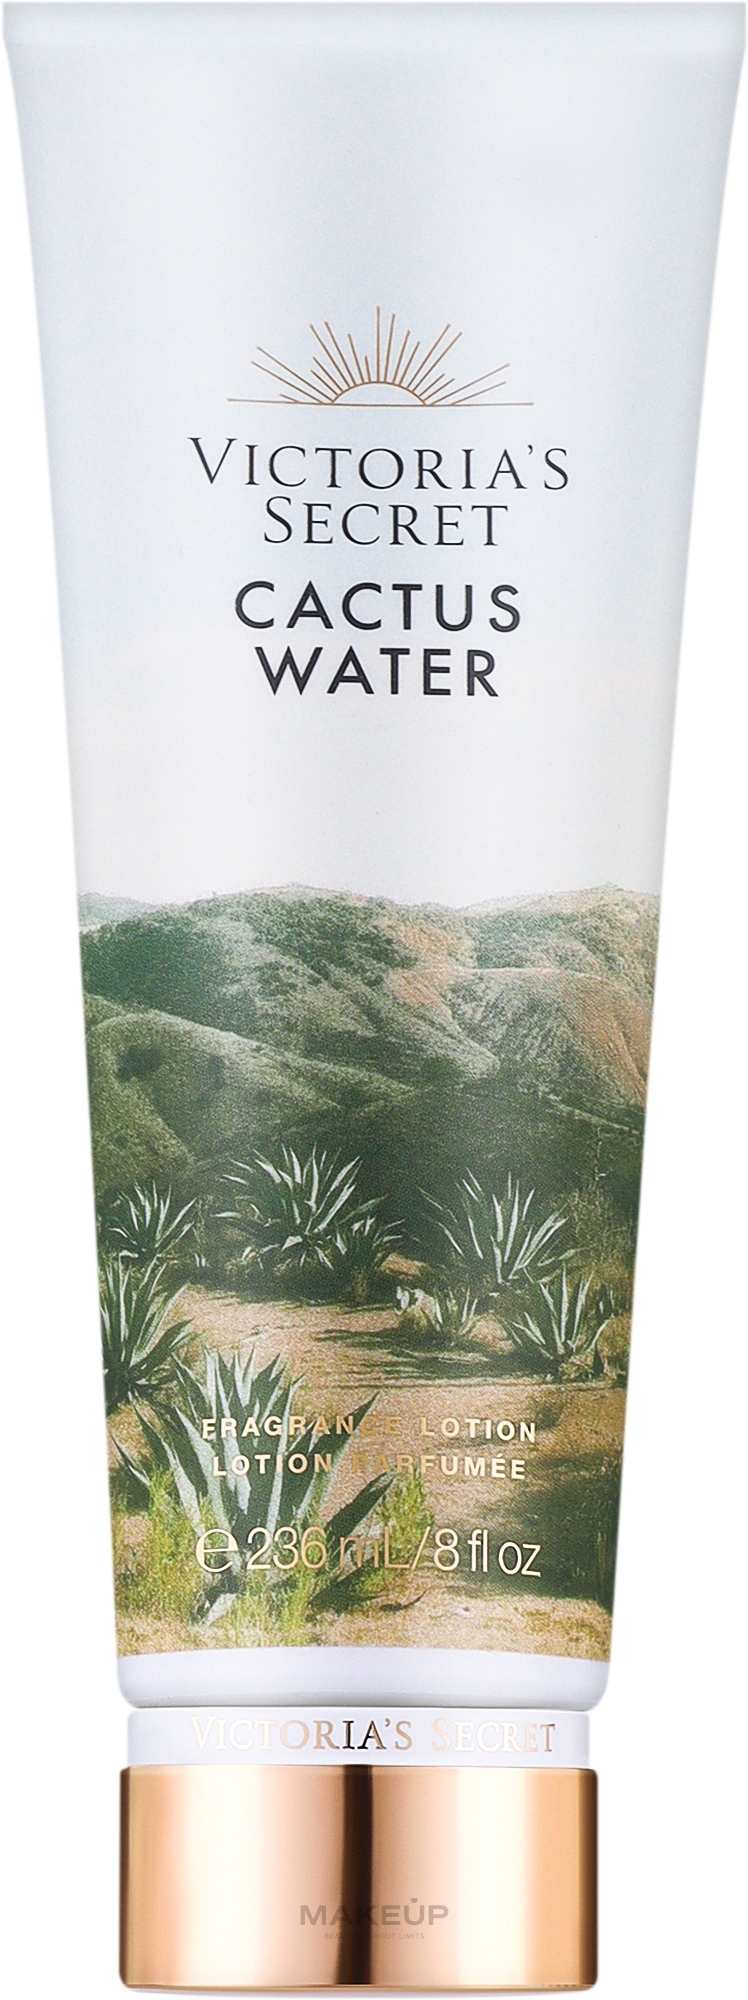 Perfumowany balsam do ciała - Victoria's Secret Cactus Water Fragrance Lotion — Zdjęcie 236 ml